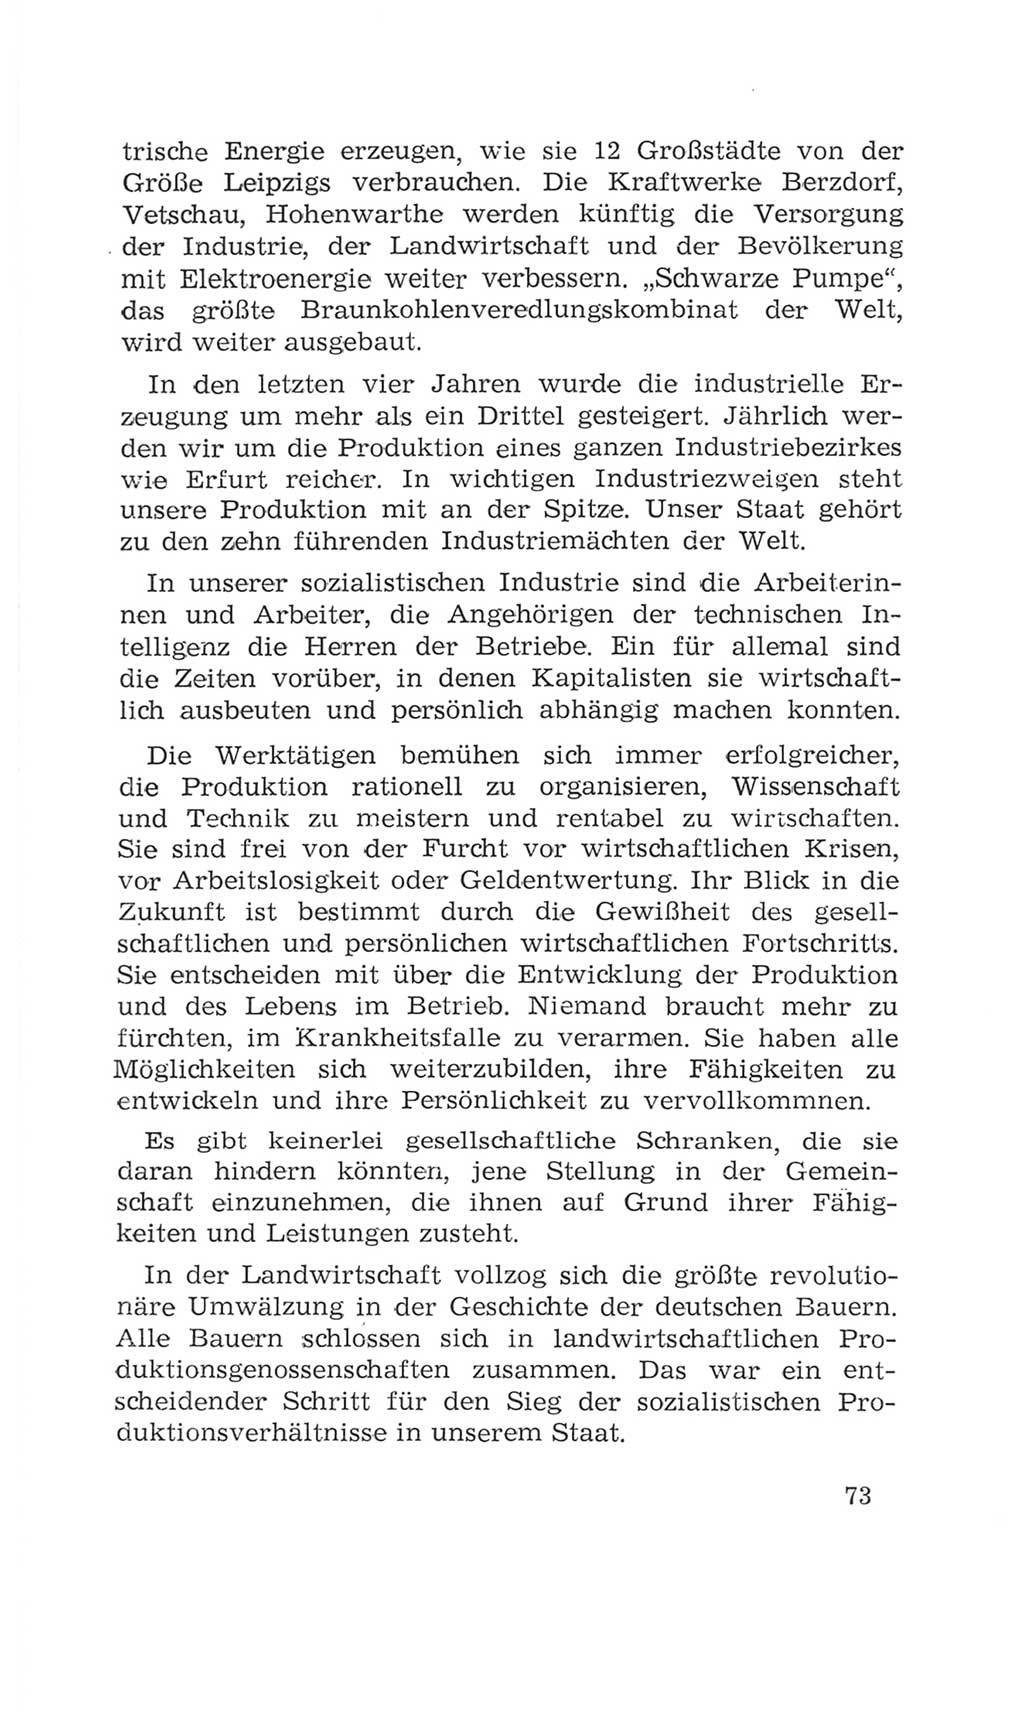 Volkskammer (VK) der Deutschen Demokratischen Republik (DDR), 4. Wahlperiode 1963-1967, Seite 73 (VK. DDR 4. WP. 1963-1967, S. 73)